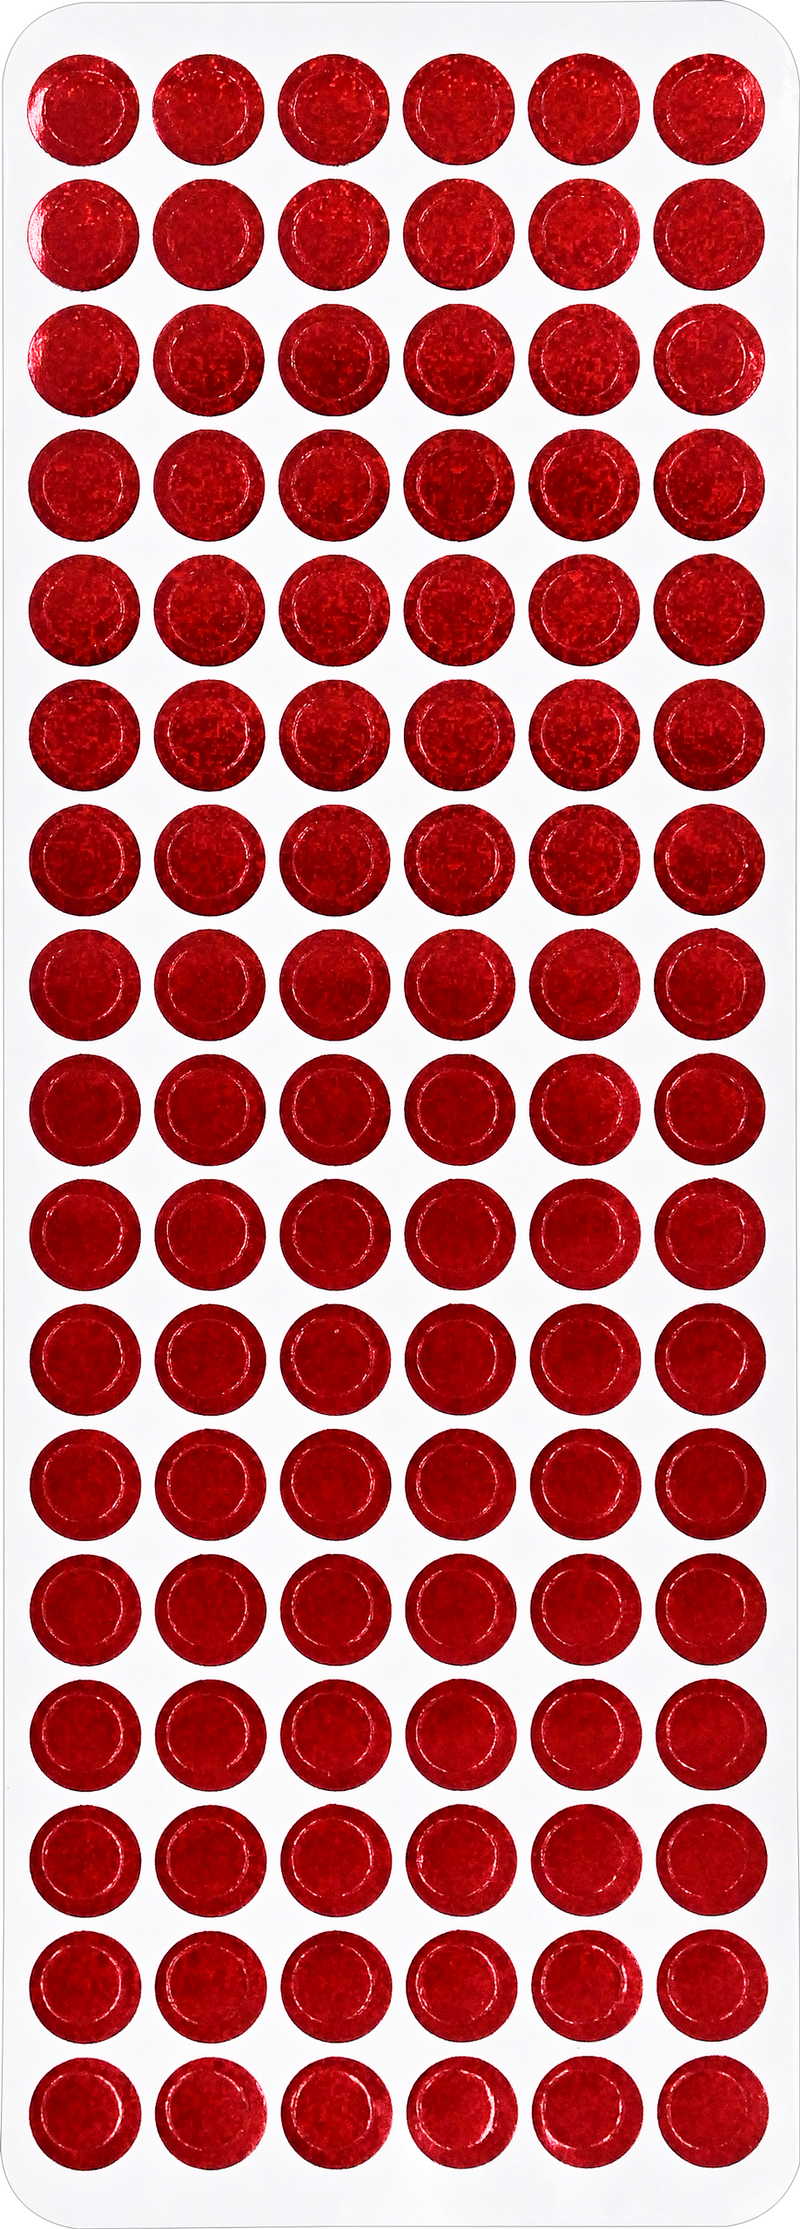 Color Foil Dots Sticker Set